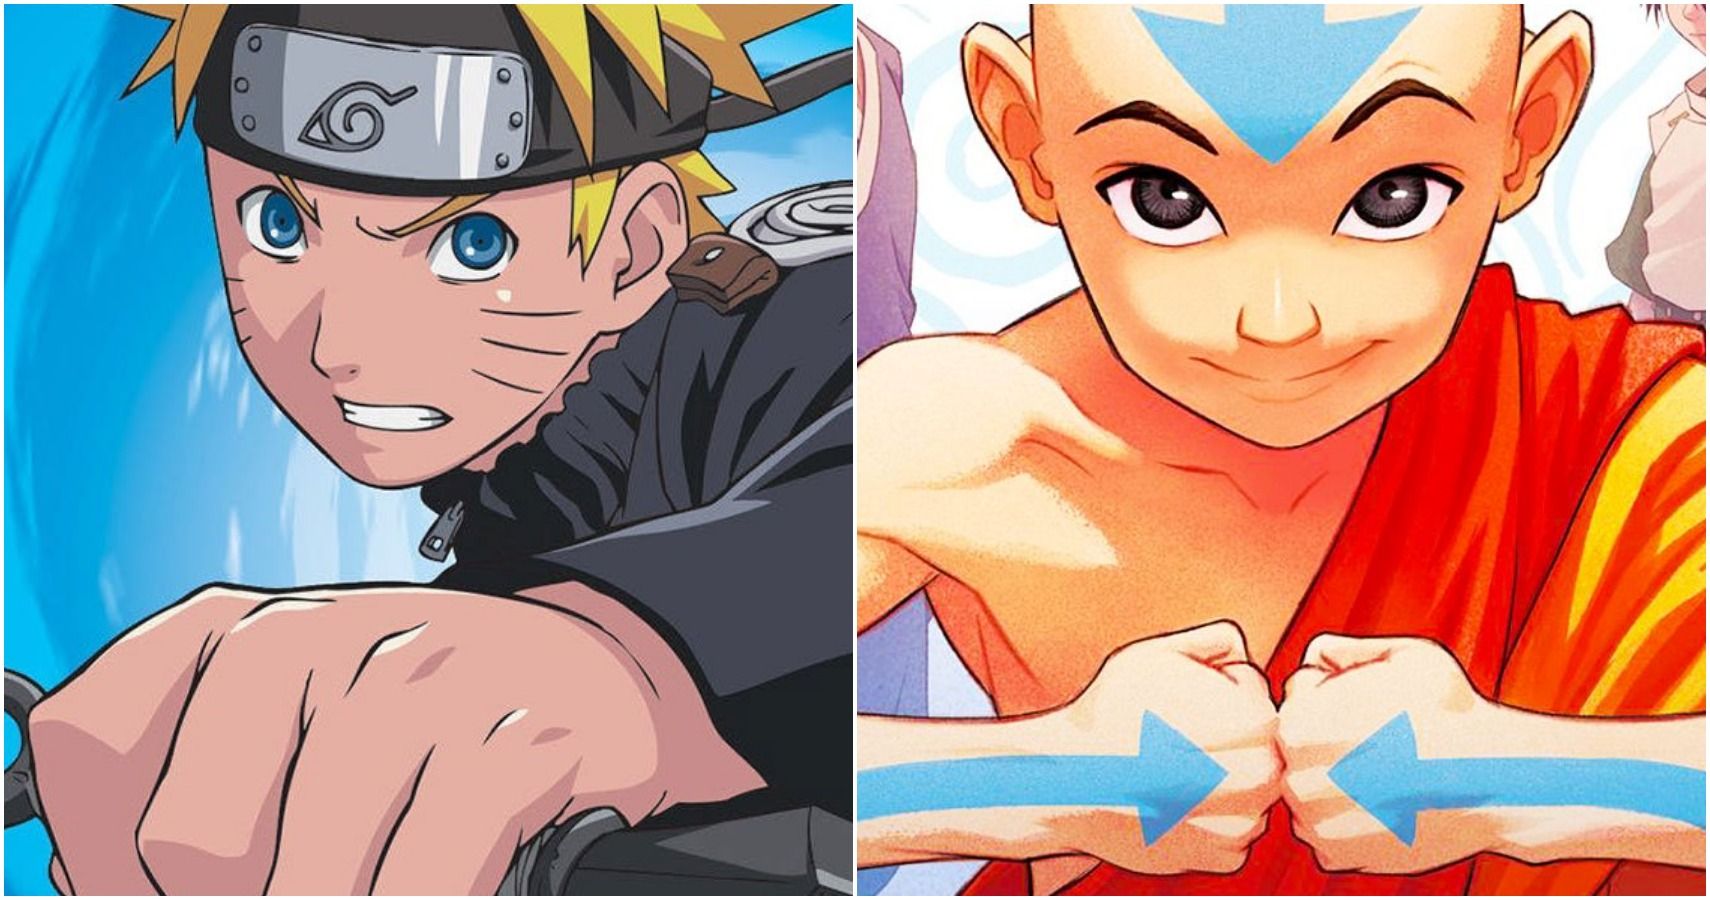 Artista imaginou um lindo crossover entre Avatar e Naruto